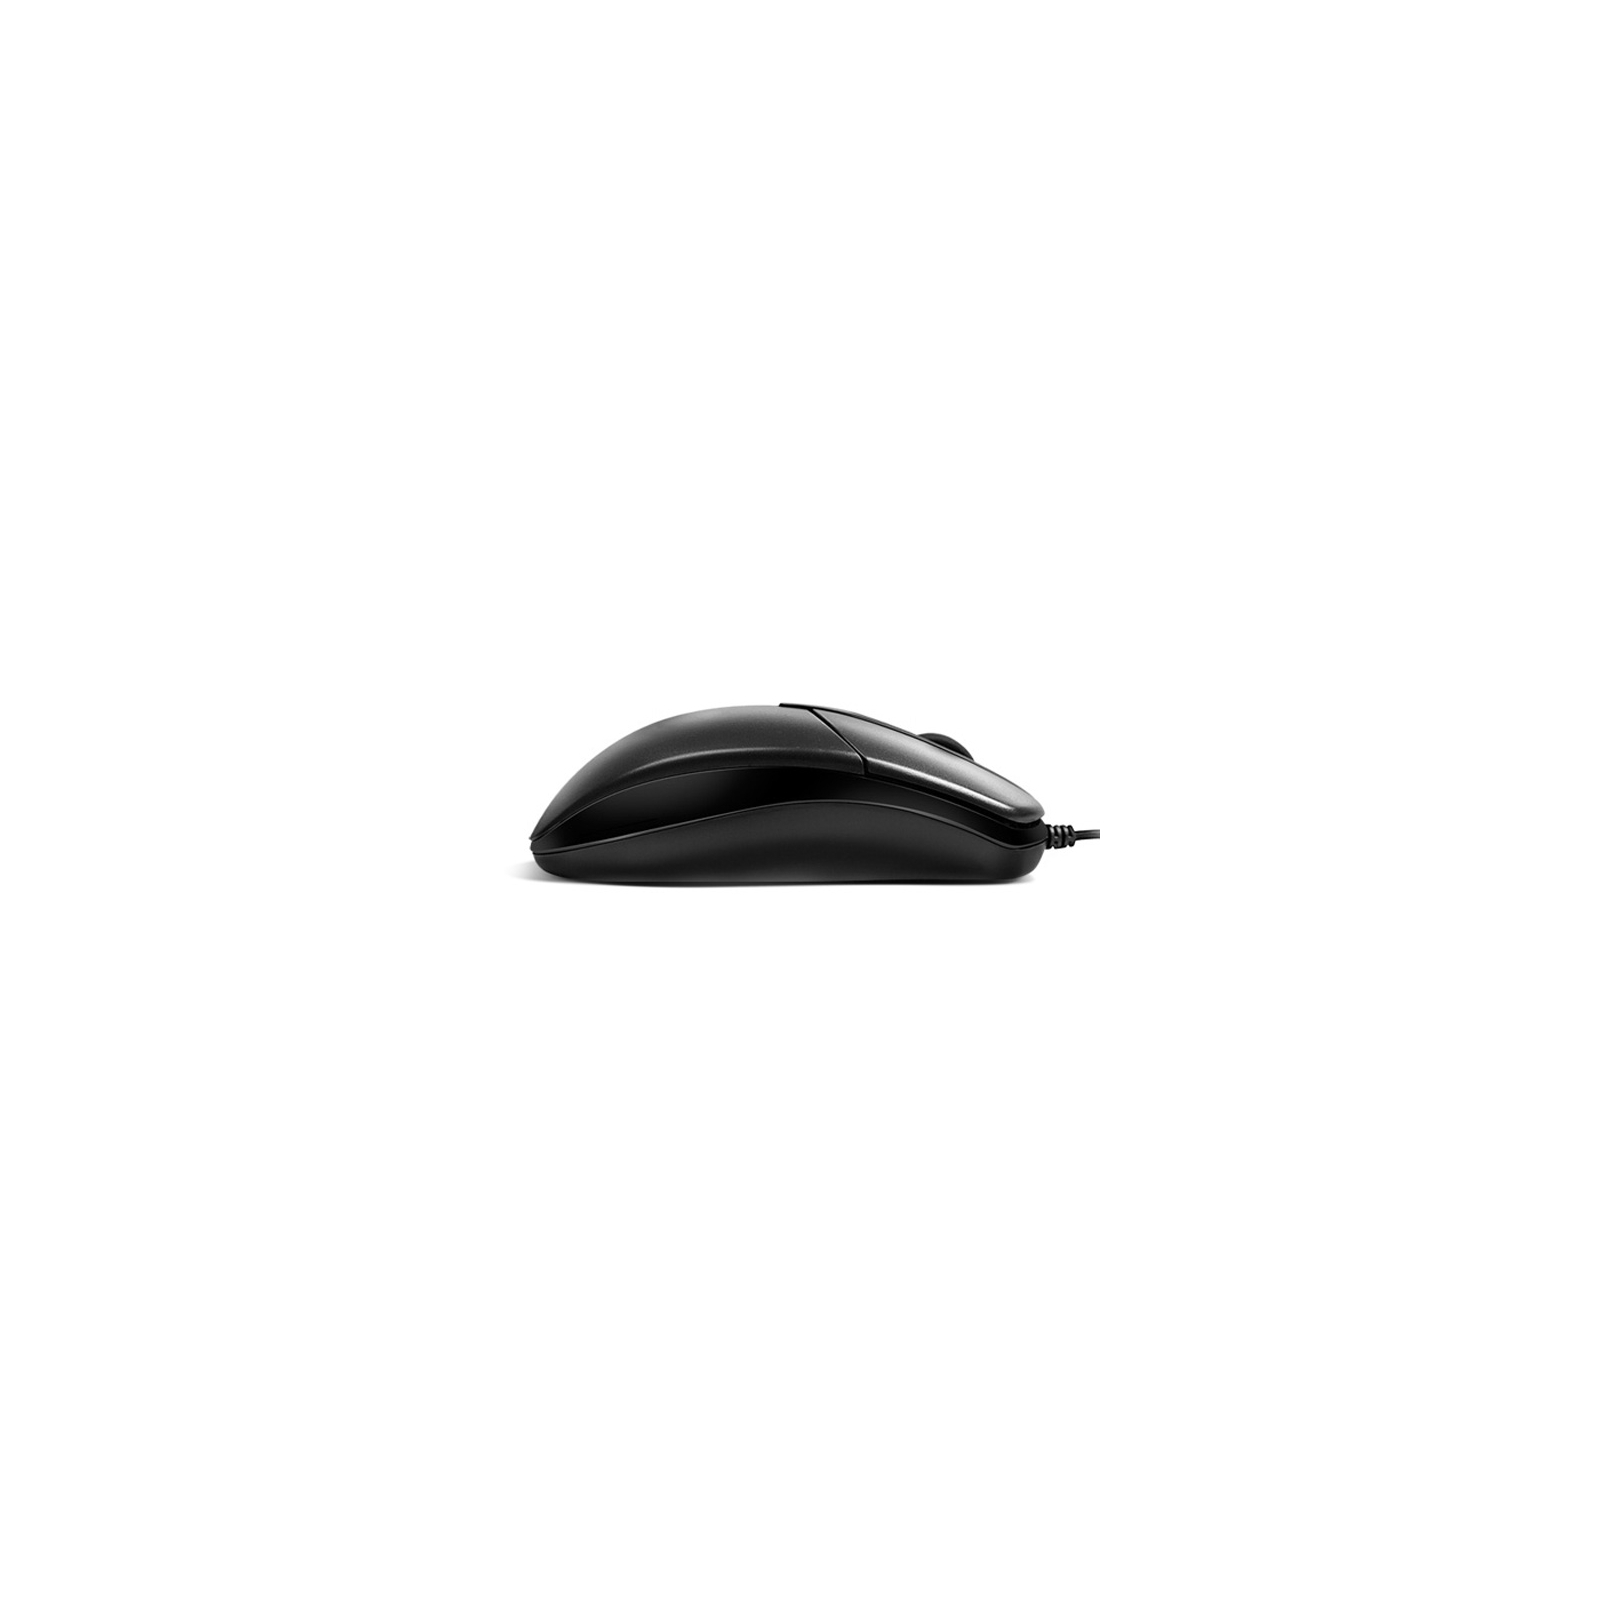 Мышка REAL-EL RM-211, USB, black изображение 5